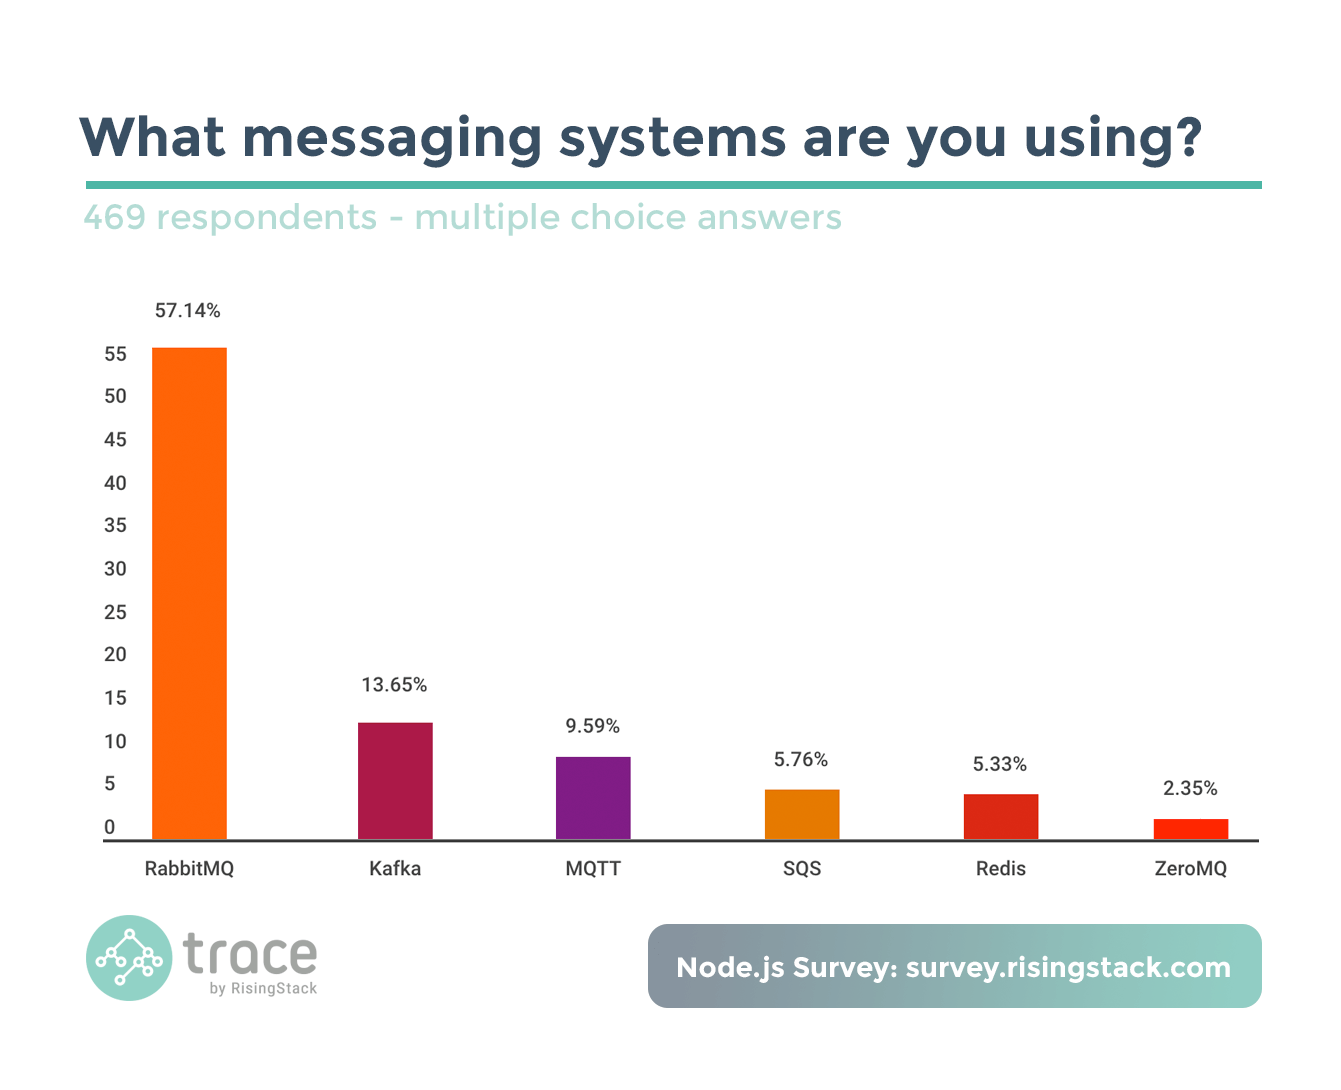 Node.js Survey - Messaging system usage